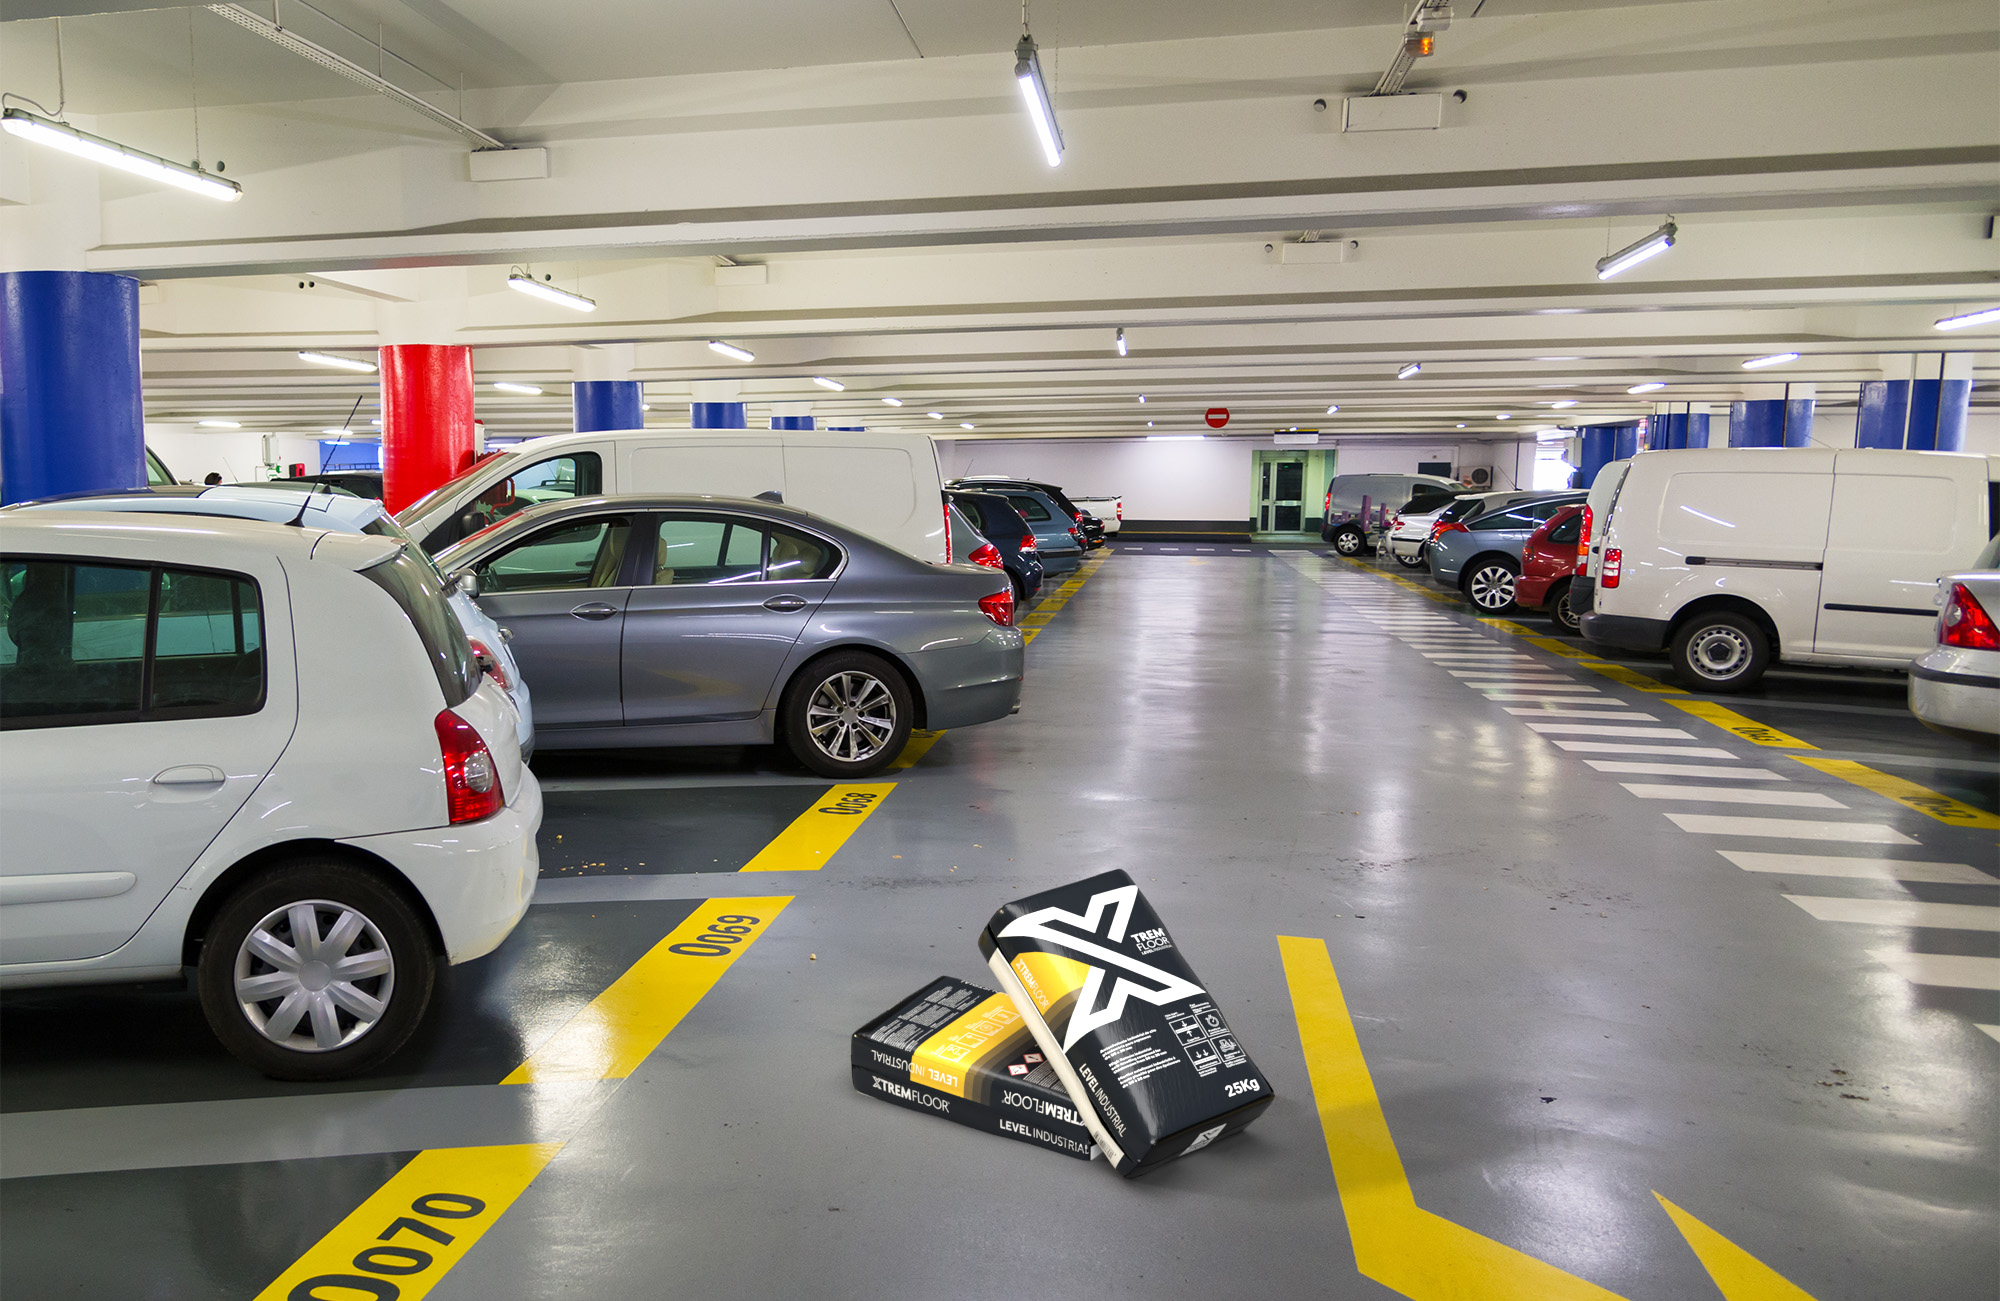   parking avec autolissant industriel XTREMFLOOR® Level Industrial sur le pavé